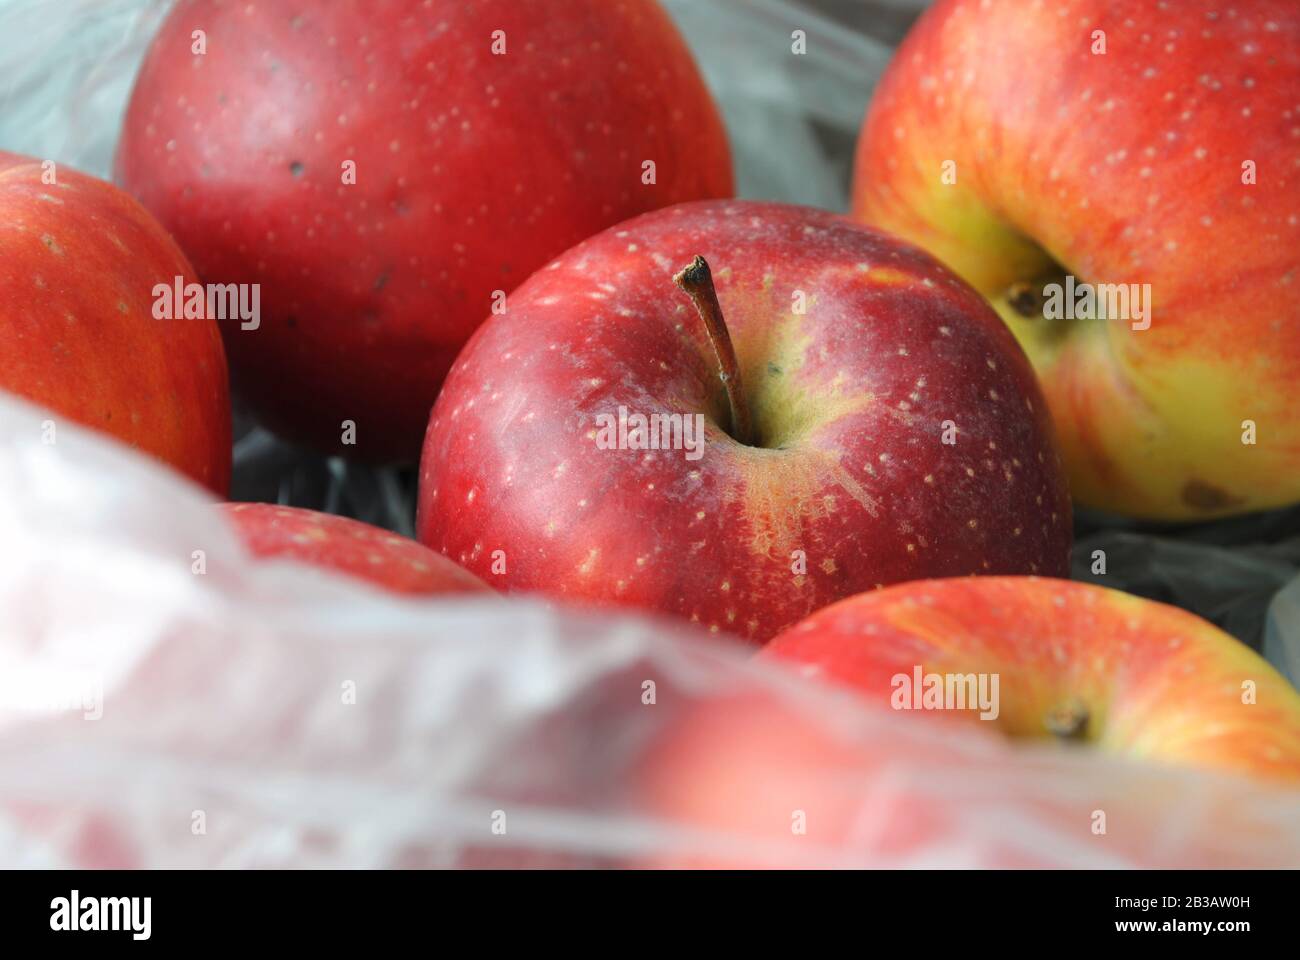 Frische rote Äpfel aus biologischem Anbau in einem durchsichtigen weißen Beutel aus Polyethylen aus dem Supermarkt Stockfoto